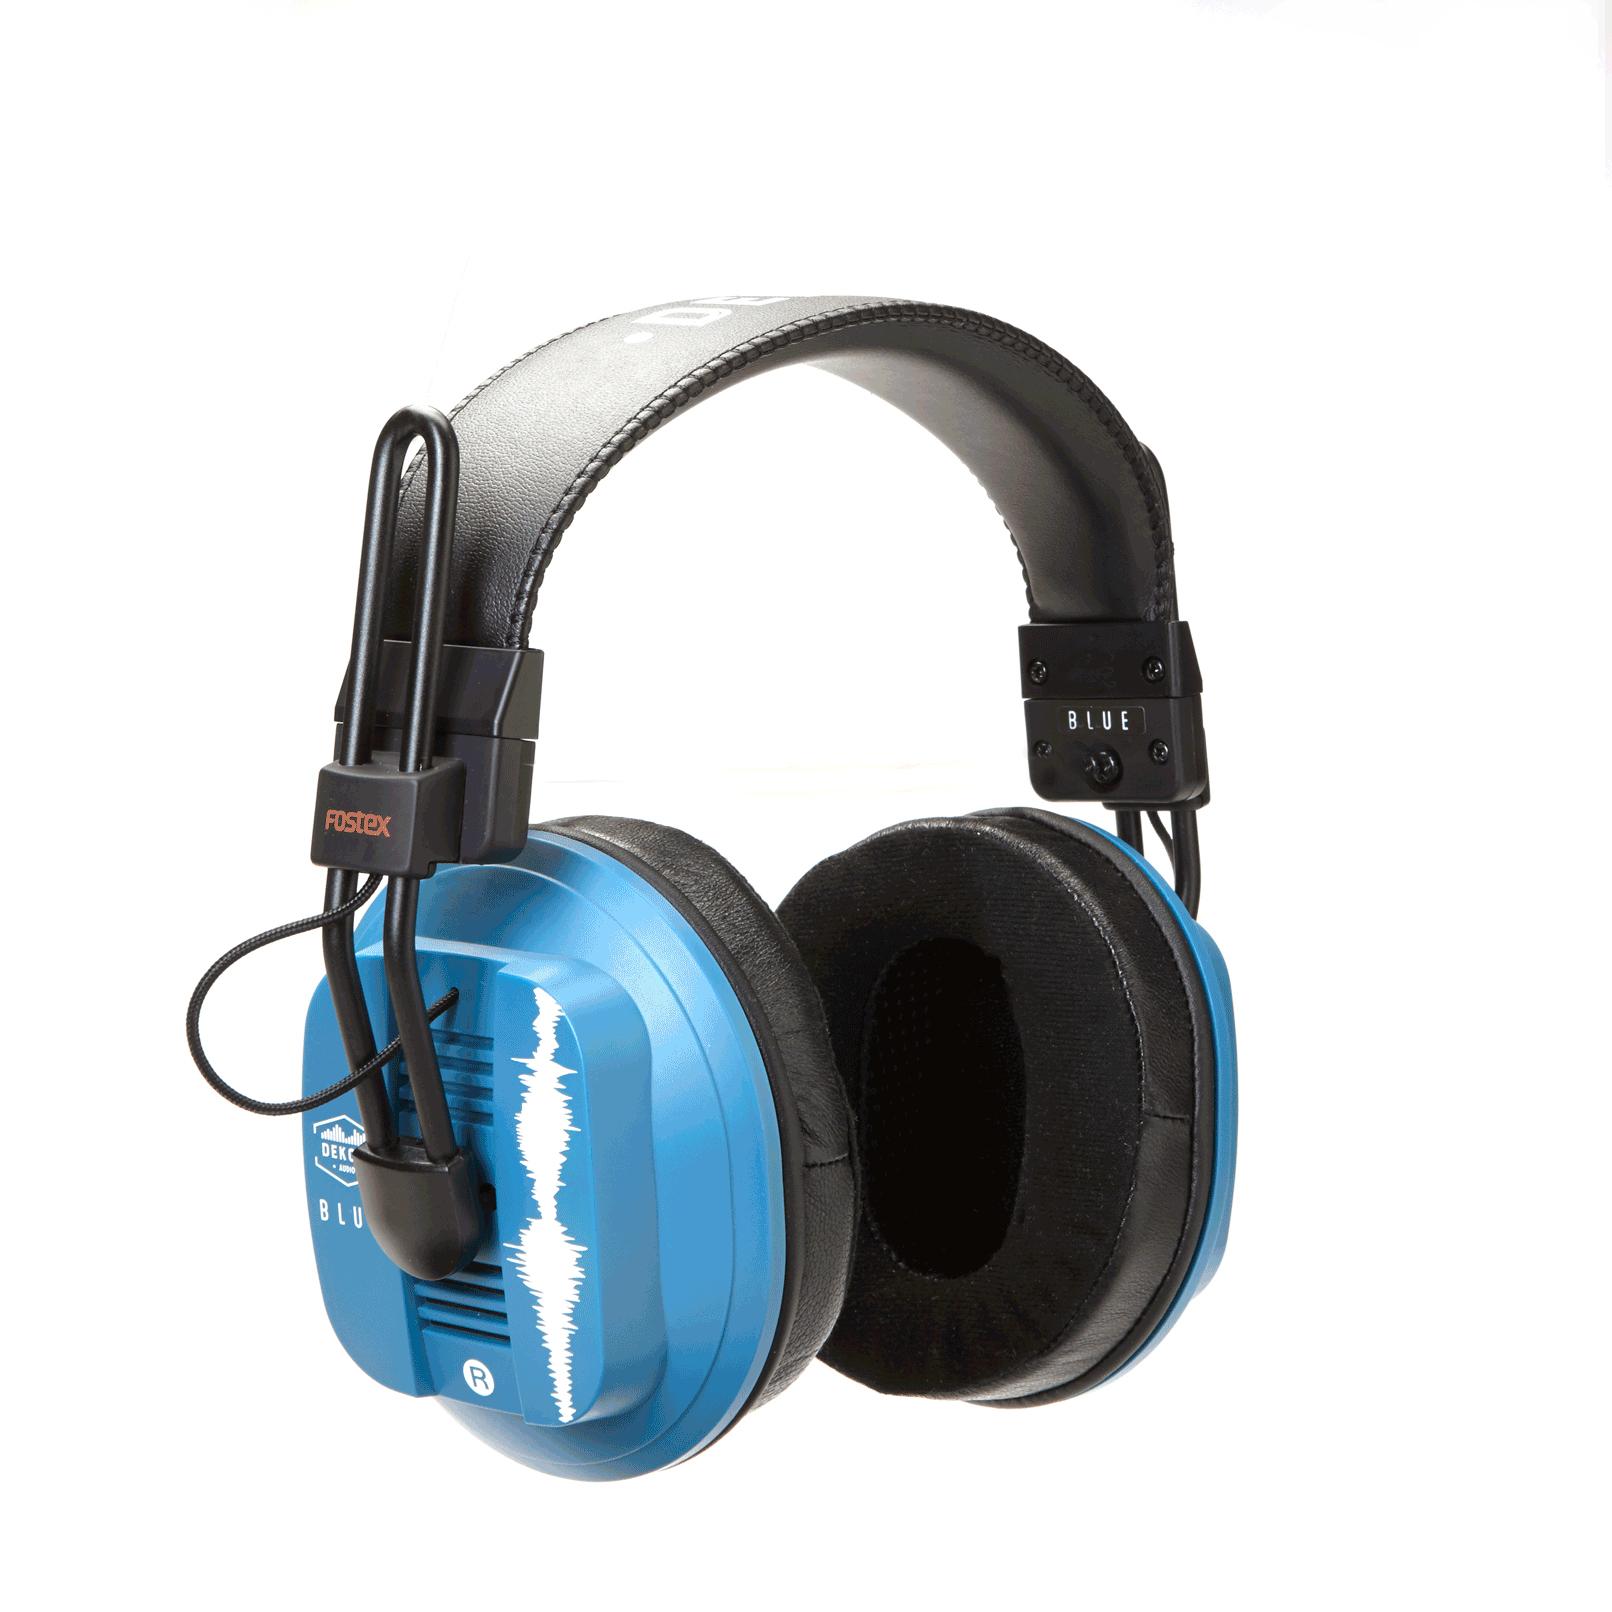 Dekoni x Fostex BLUE Headphones